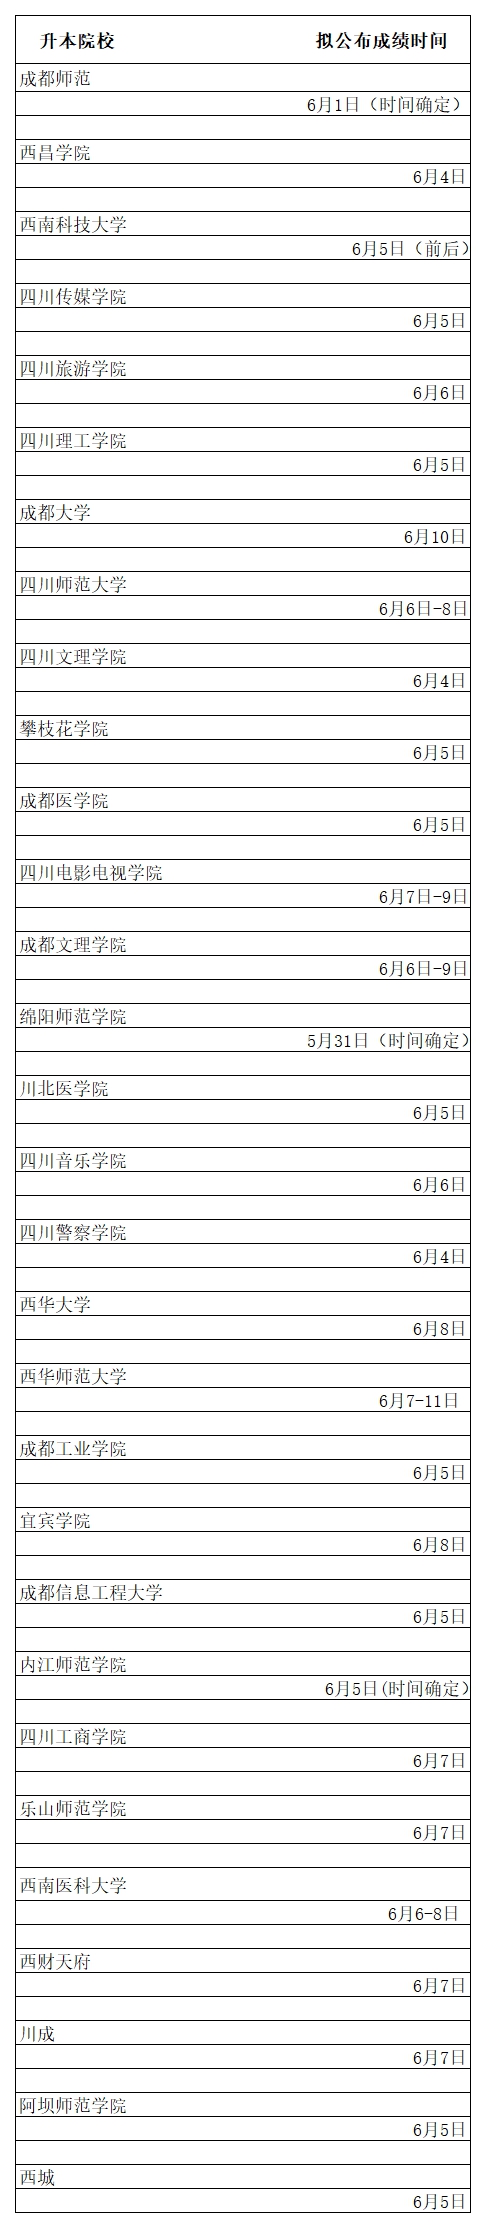 四川省2018年专升本成绩公布时间表及近期事项提醒